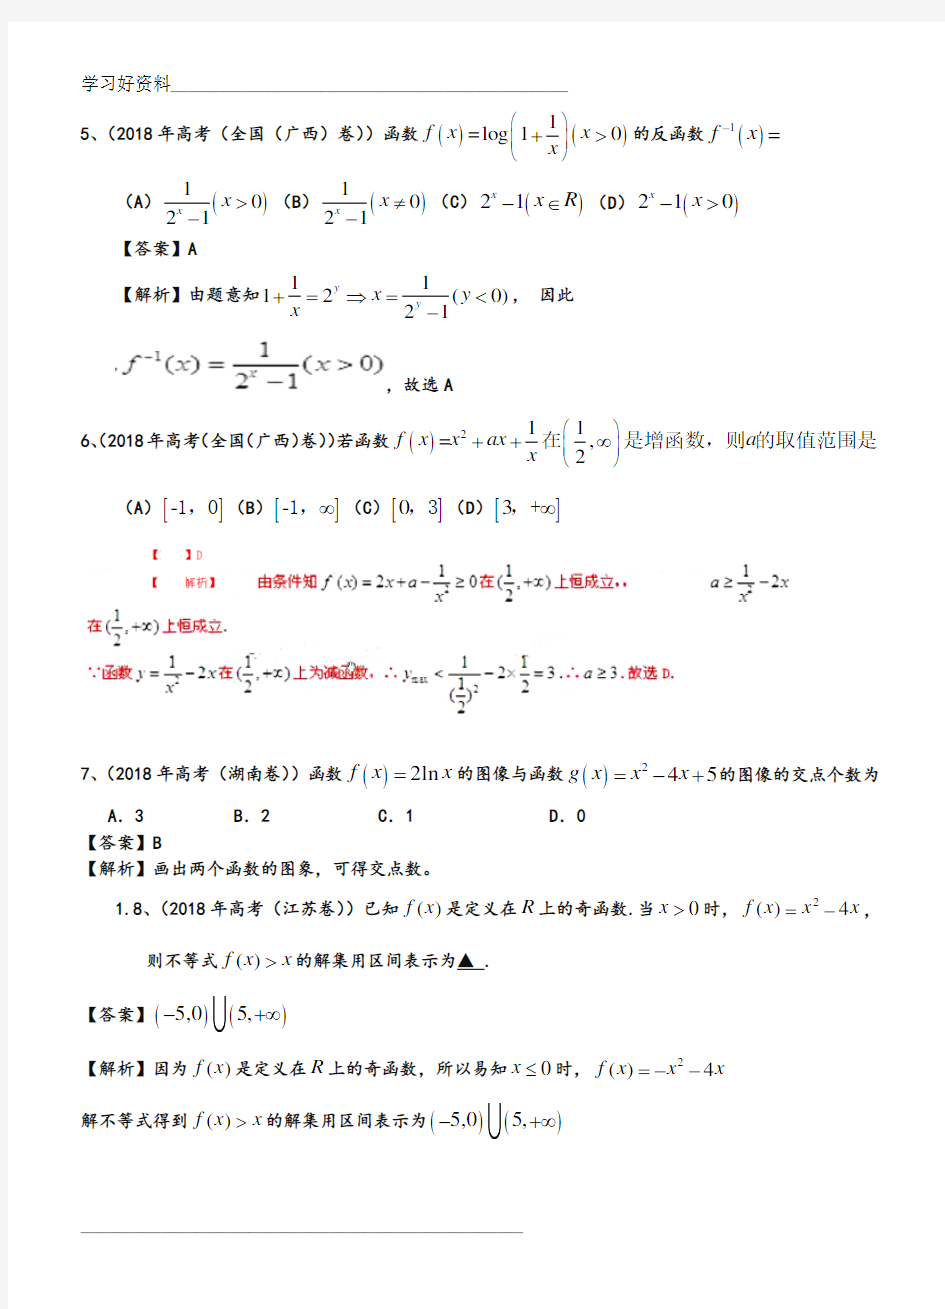 2019年高考真题理科数学分类汇编(解析版)-函数和答案